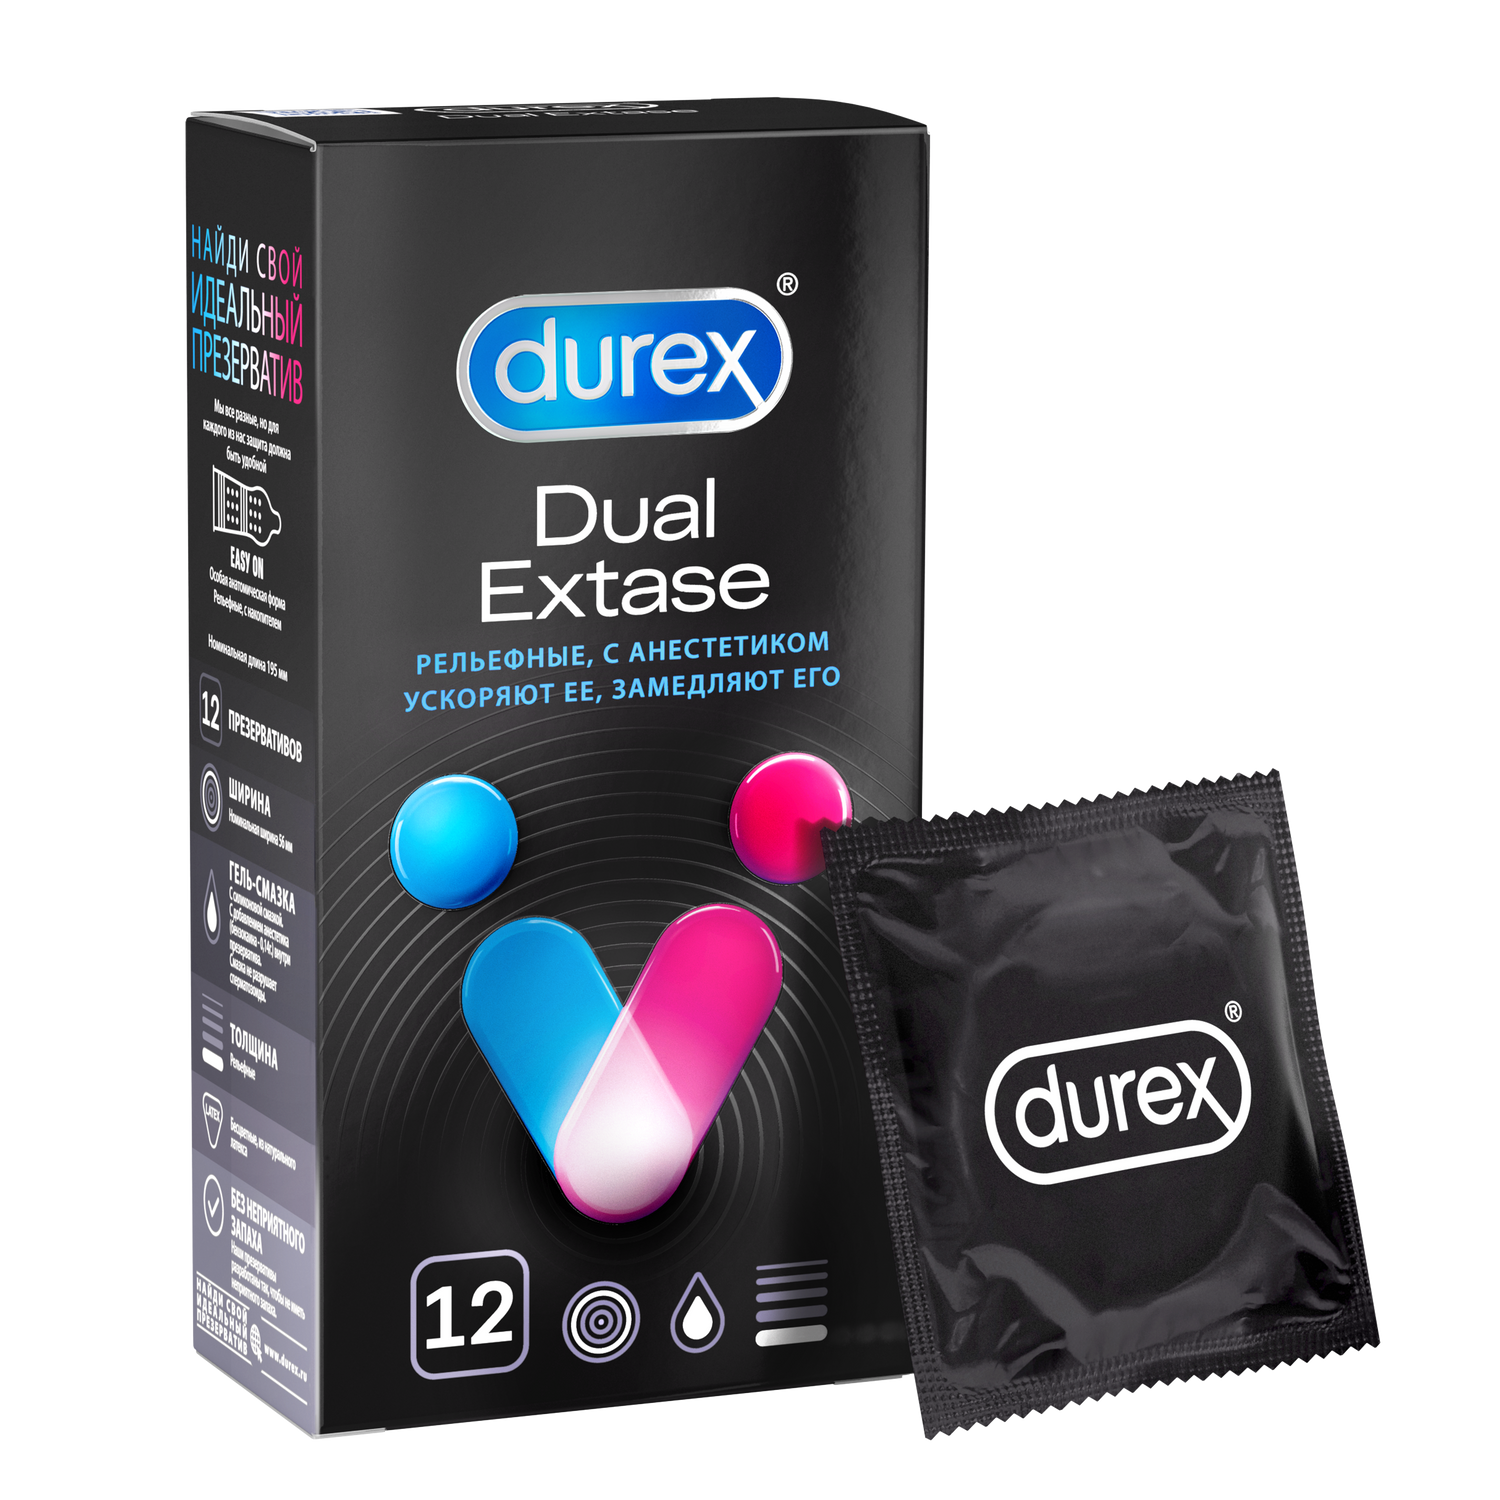 Презервативы Durex Dual Extase рельефные с анестетиком, 12 шт. дао отношений руководство умной женщины по абсолютной неотразимости